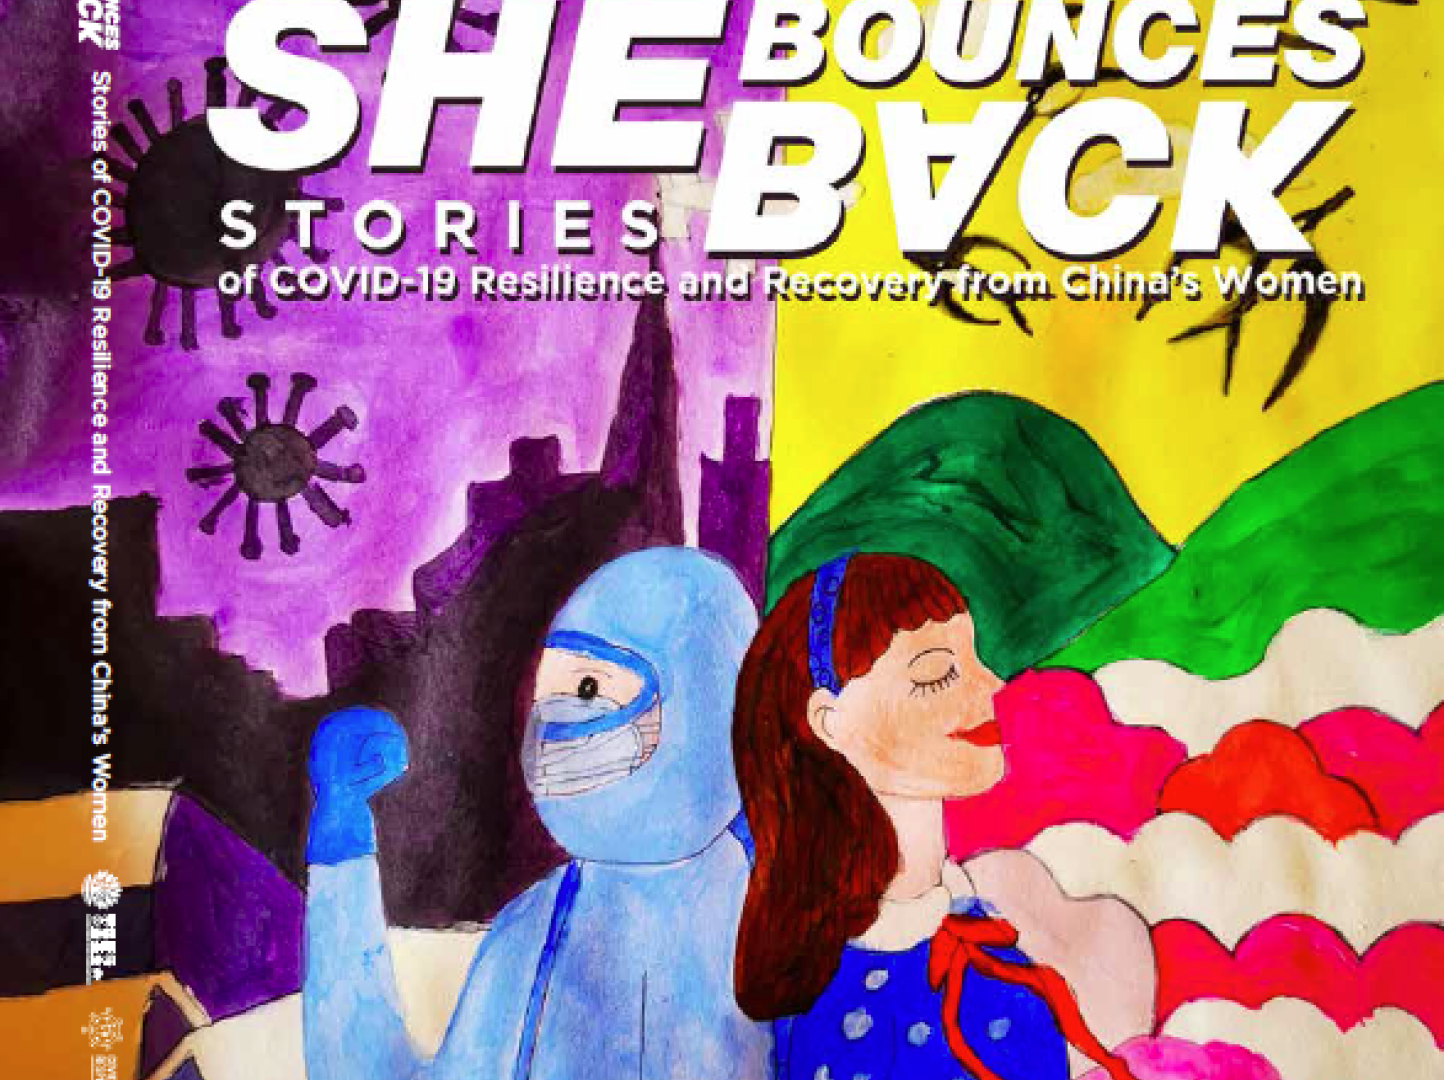 #SheBouncesBack booklet